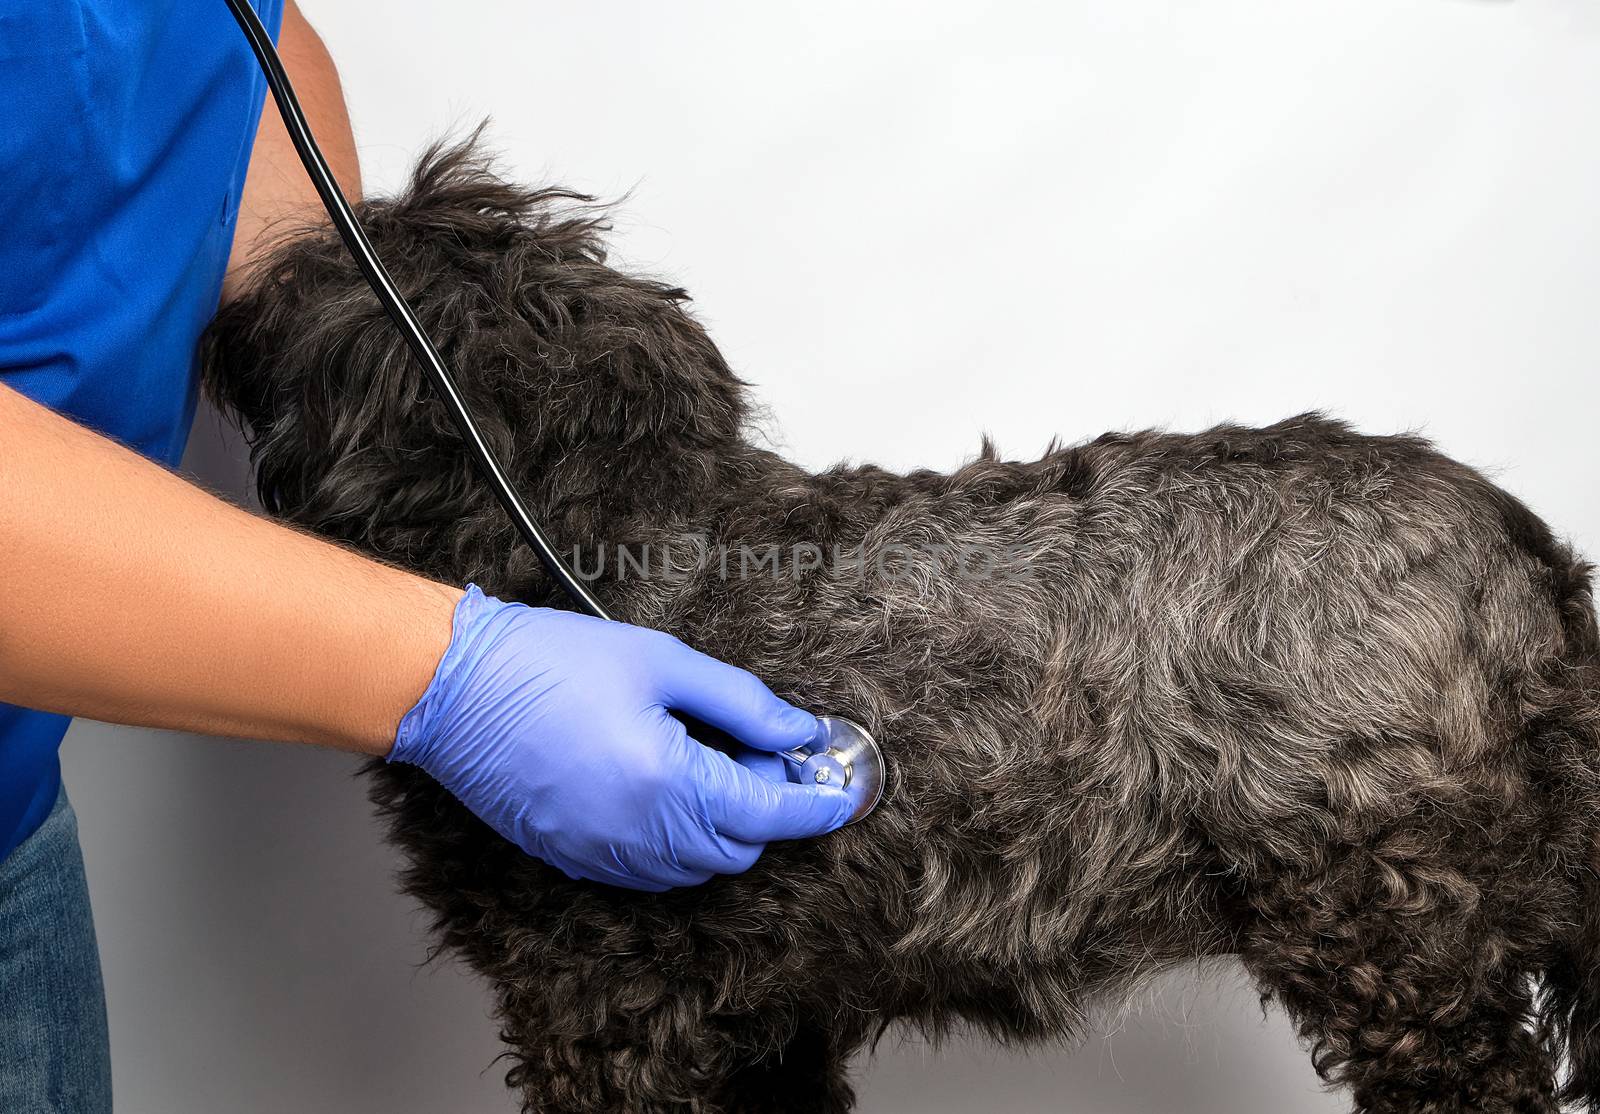 veterinarian in a blue uniform bugs the heartbeat of a black flu by ndanko